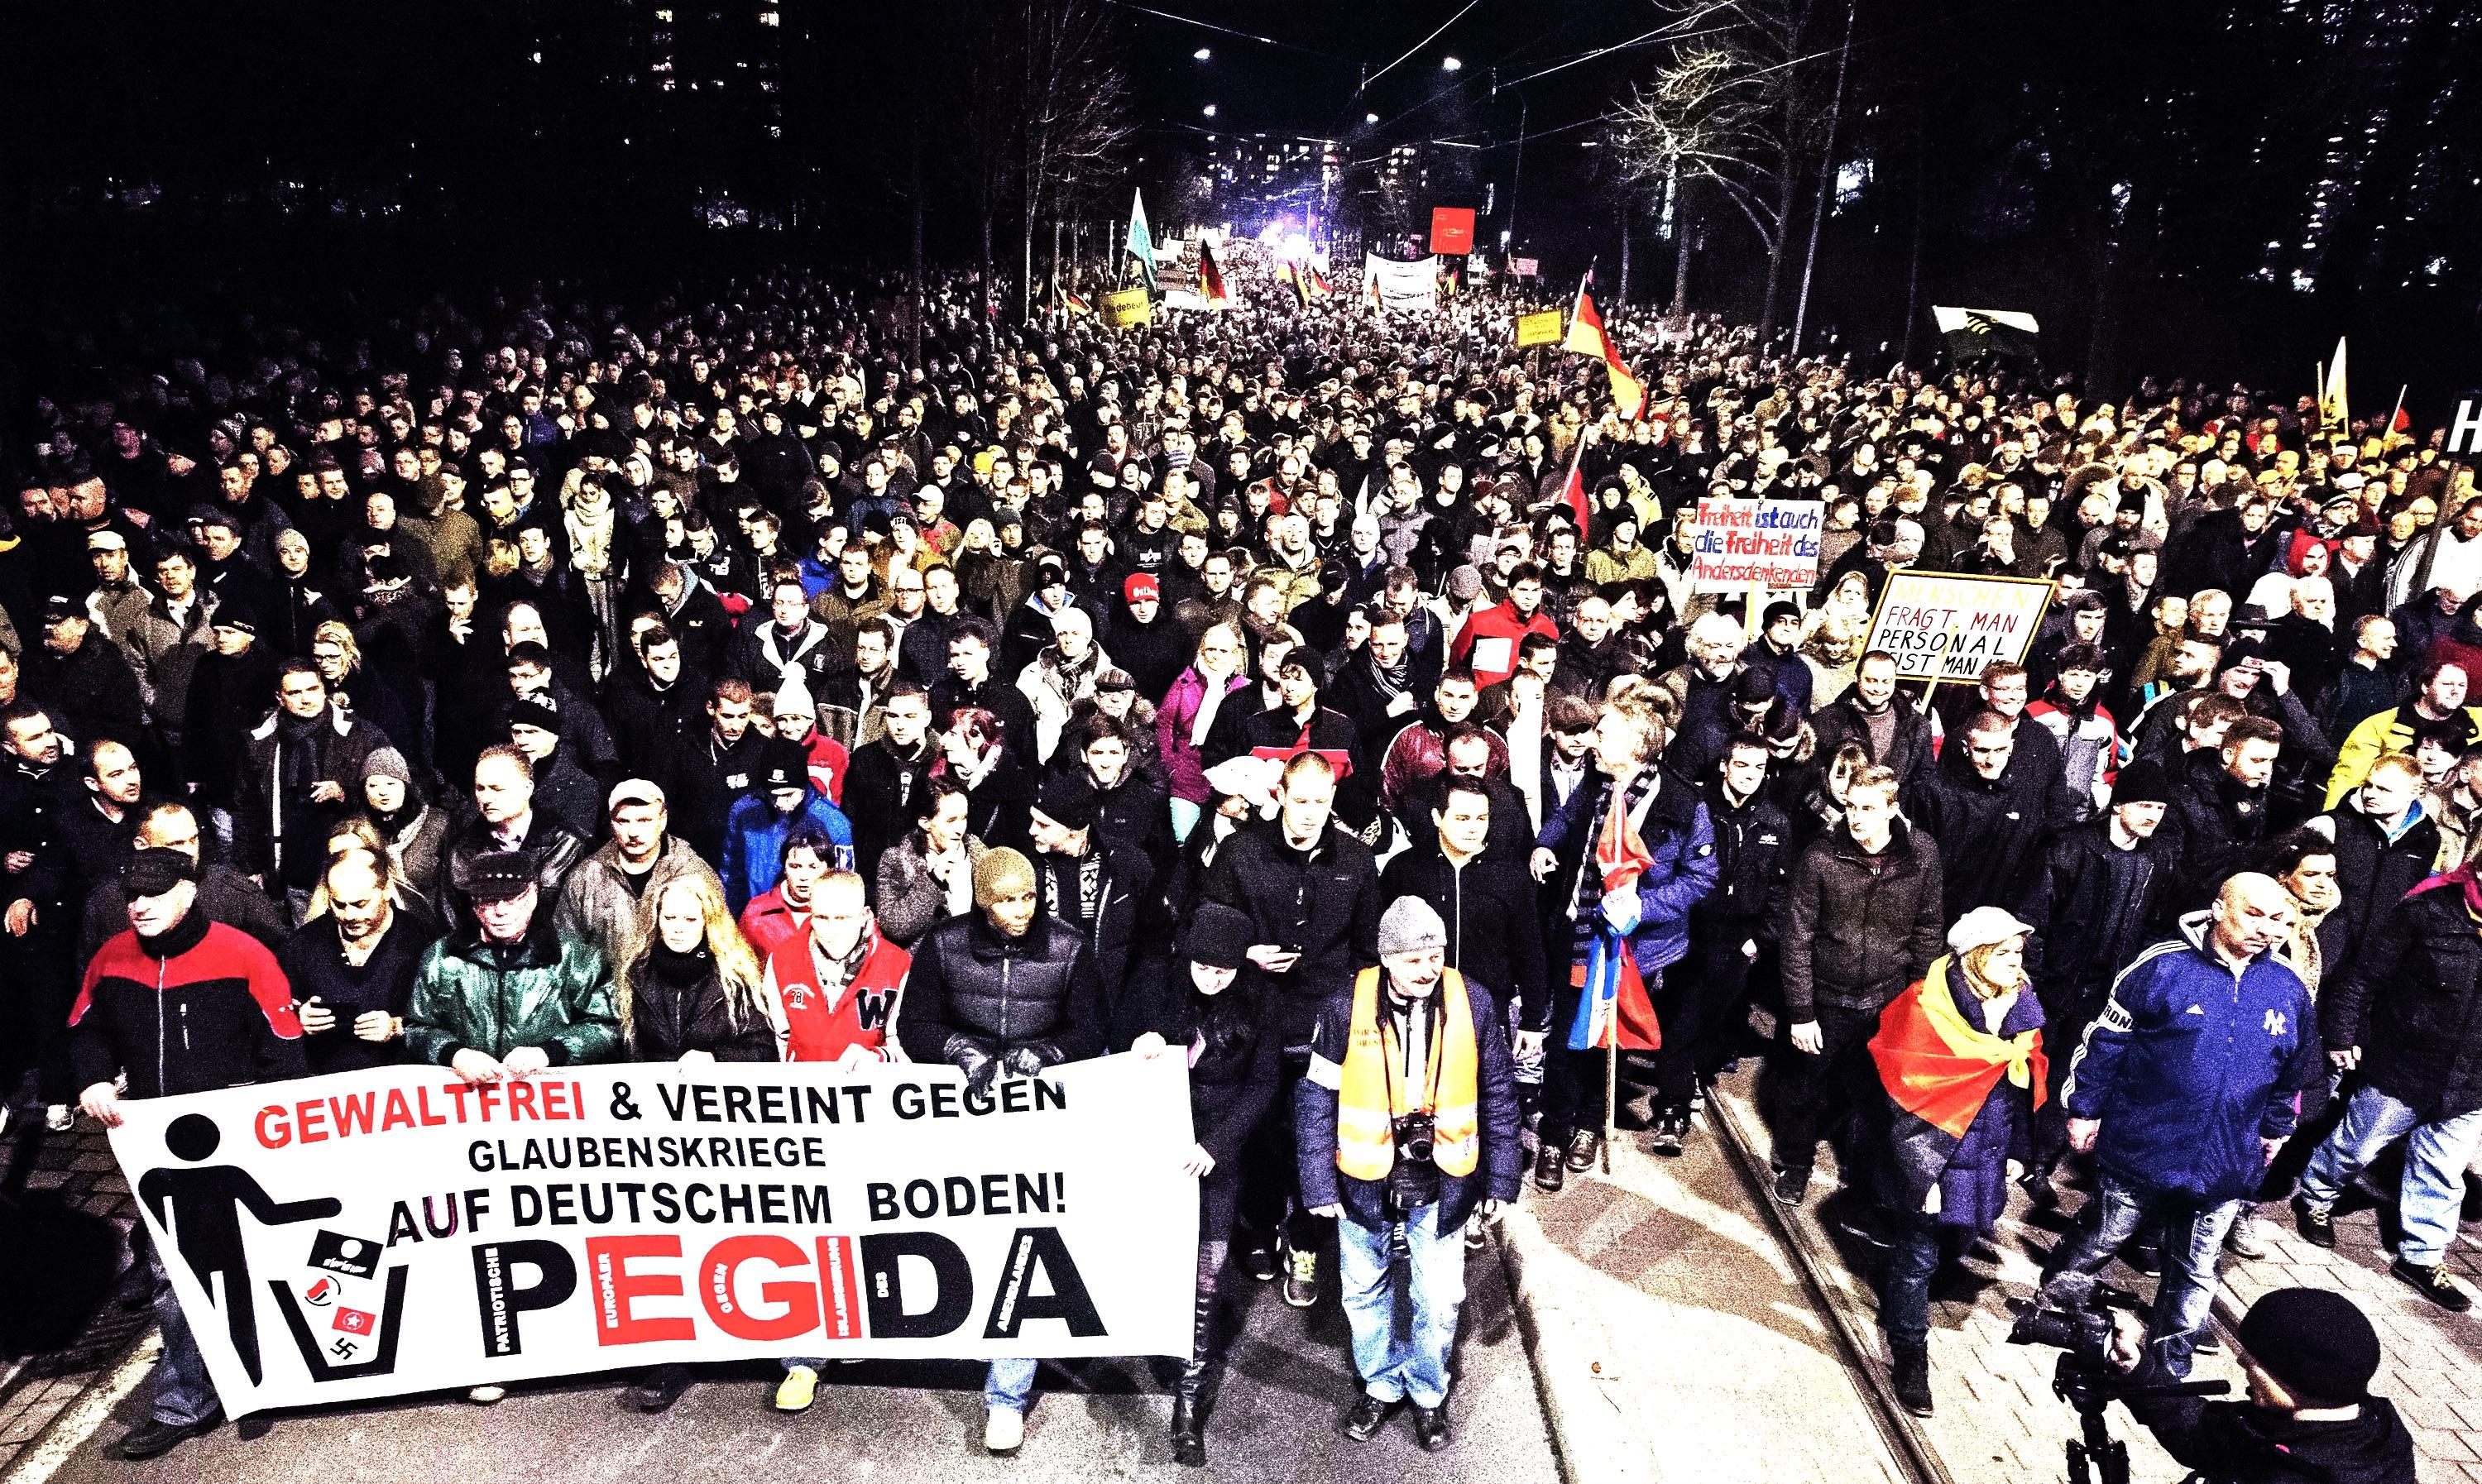 Der er grøde på Tysklands højrefløj, hvor den islamkritiske bevægelse Pegida længe har marcheret i utilfredshed over særlig udlændingepolitikken.
Foto: Polfoto